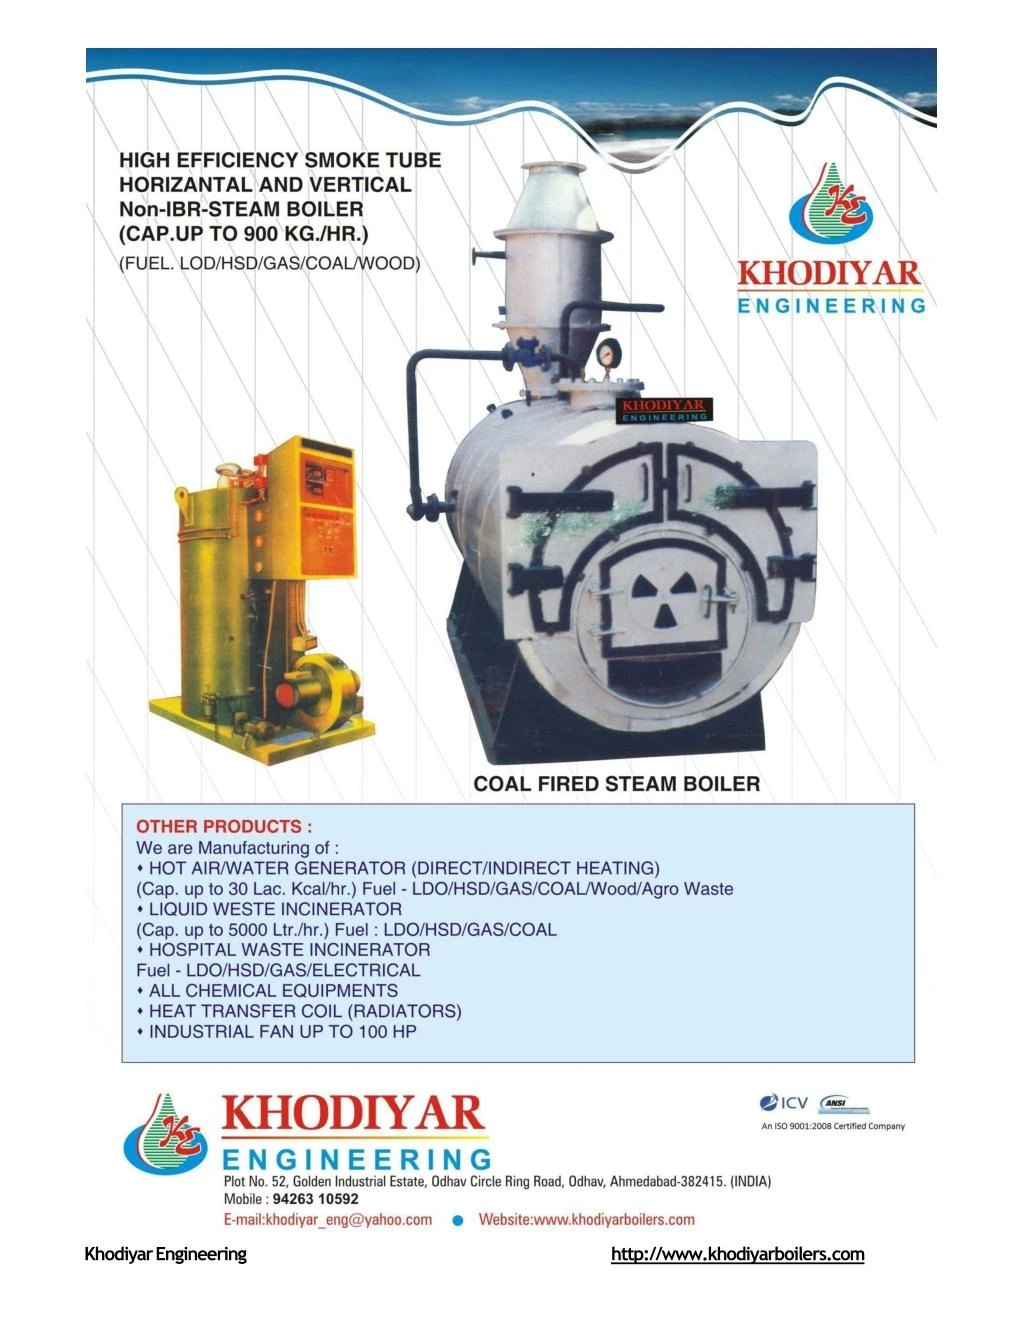 khodiyar engineering